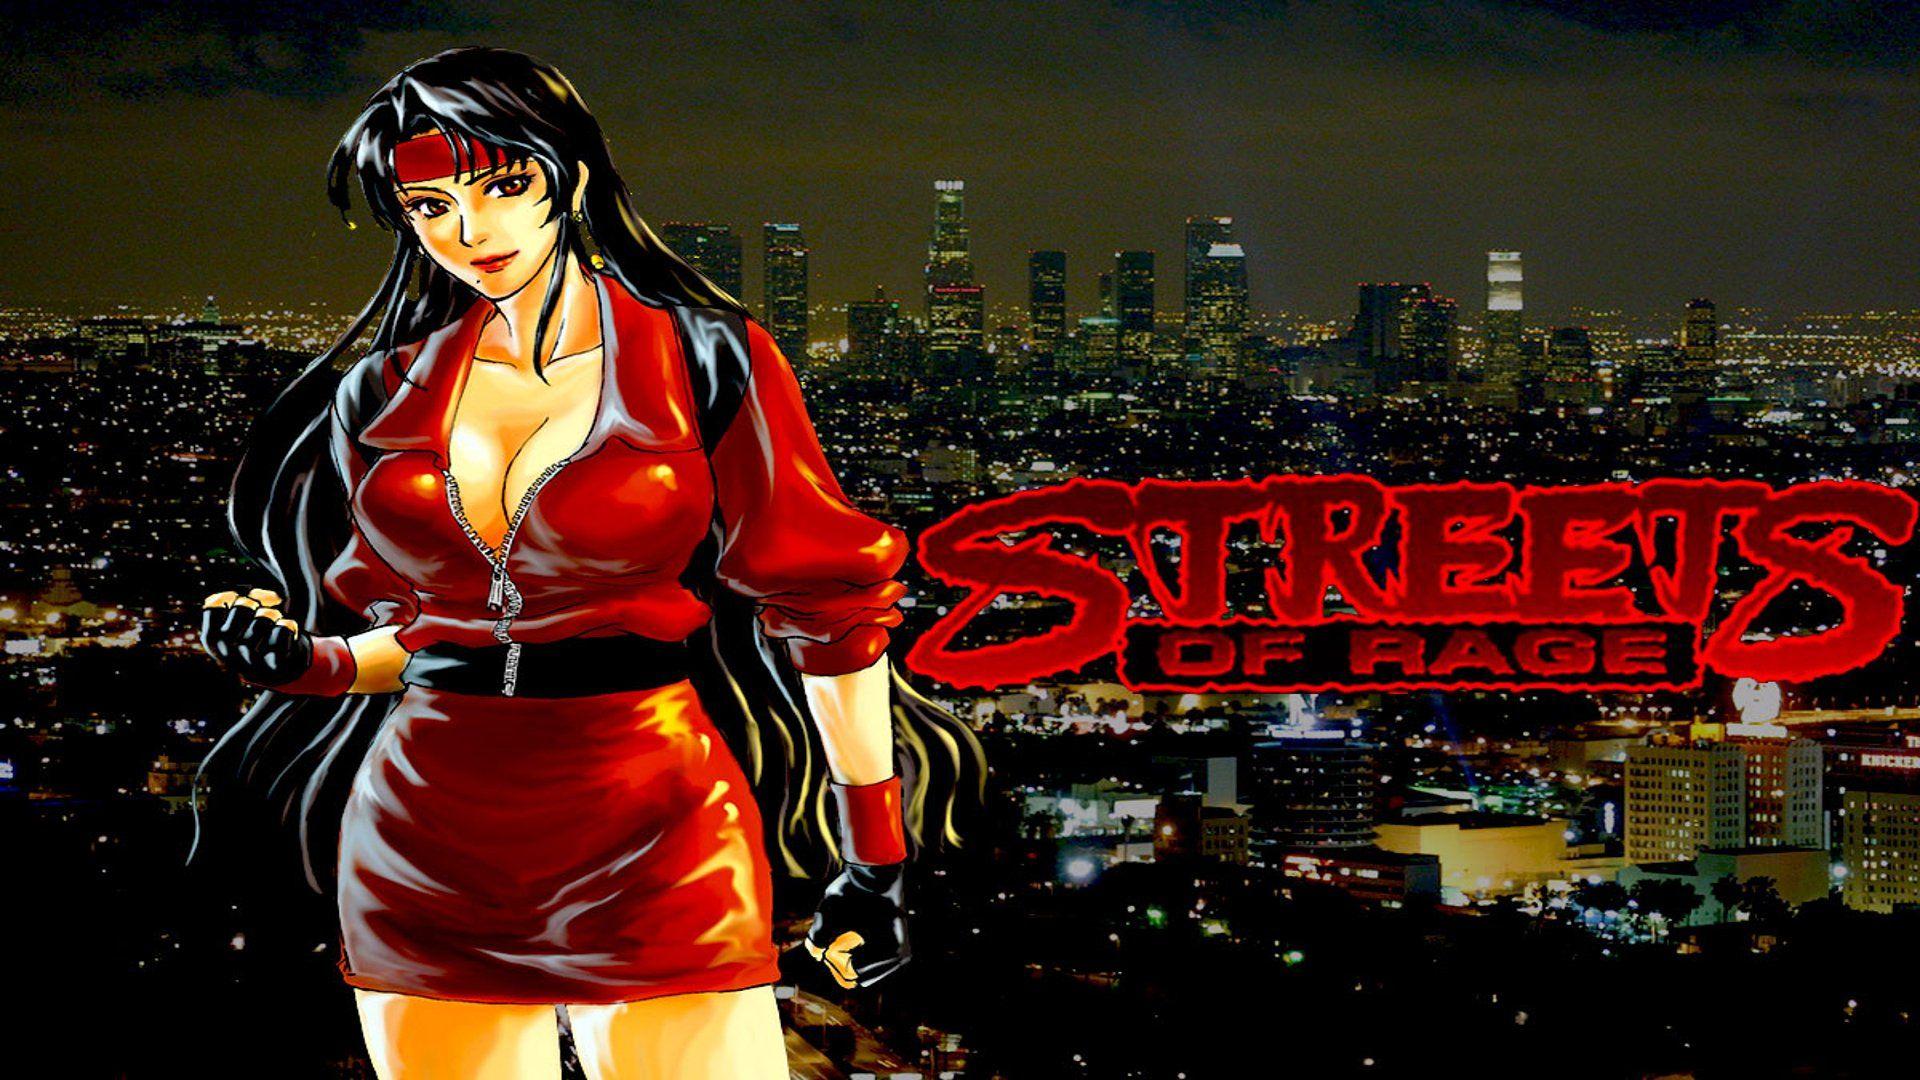 Streets of Rage Remake v5 HD Wallpaper. Background Image